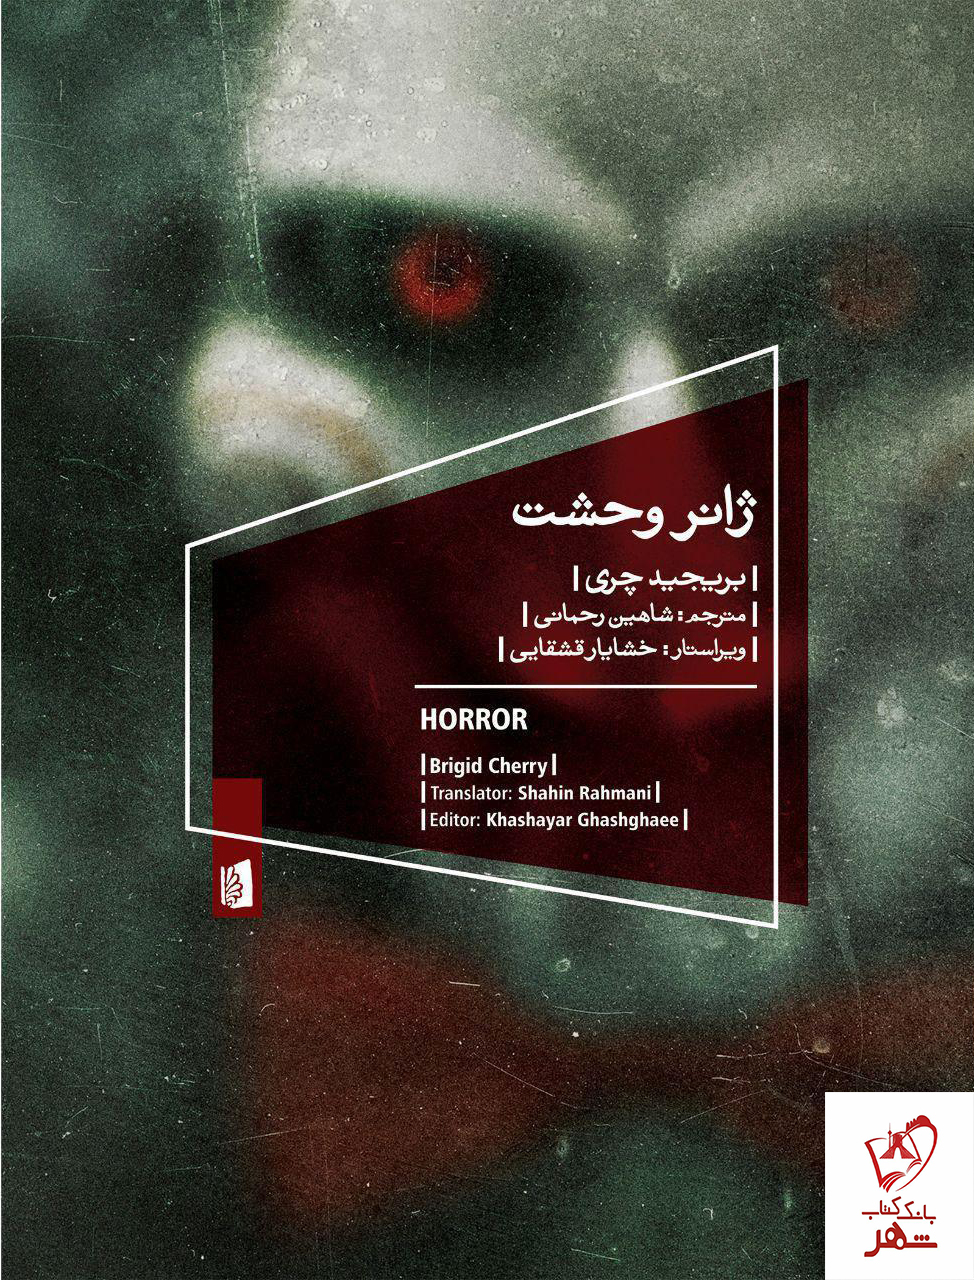 خرید کتاب ژانر وحشت نوشته بریجید چری از نشر بیدگل